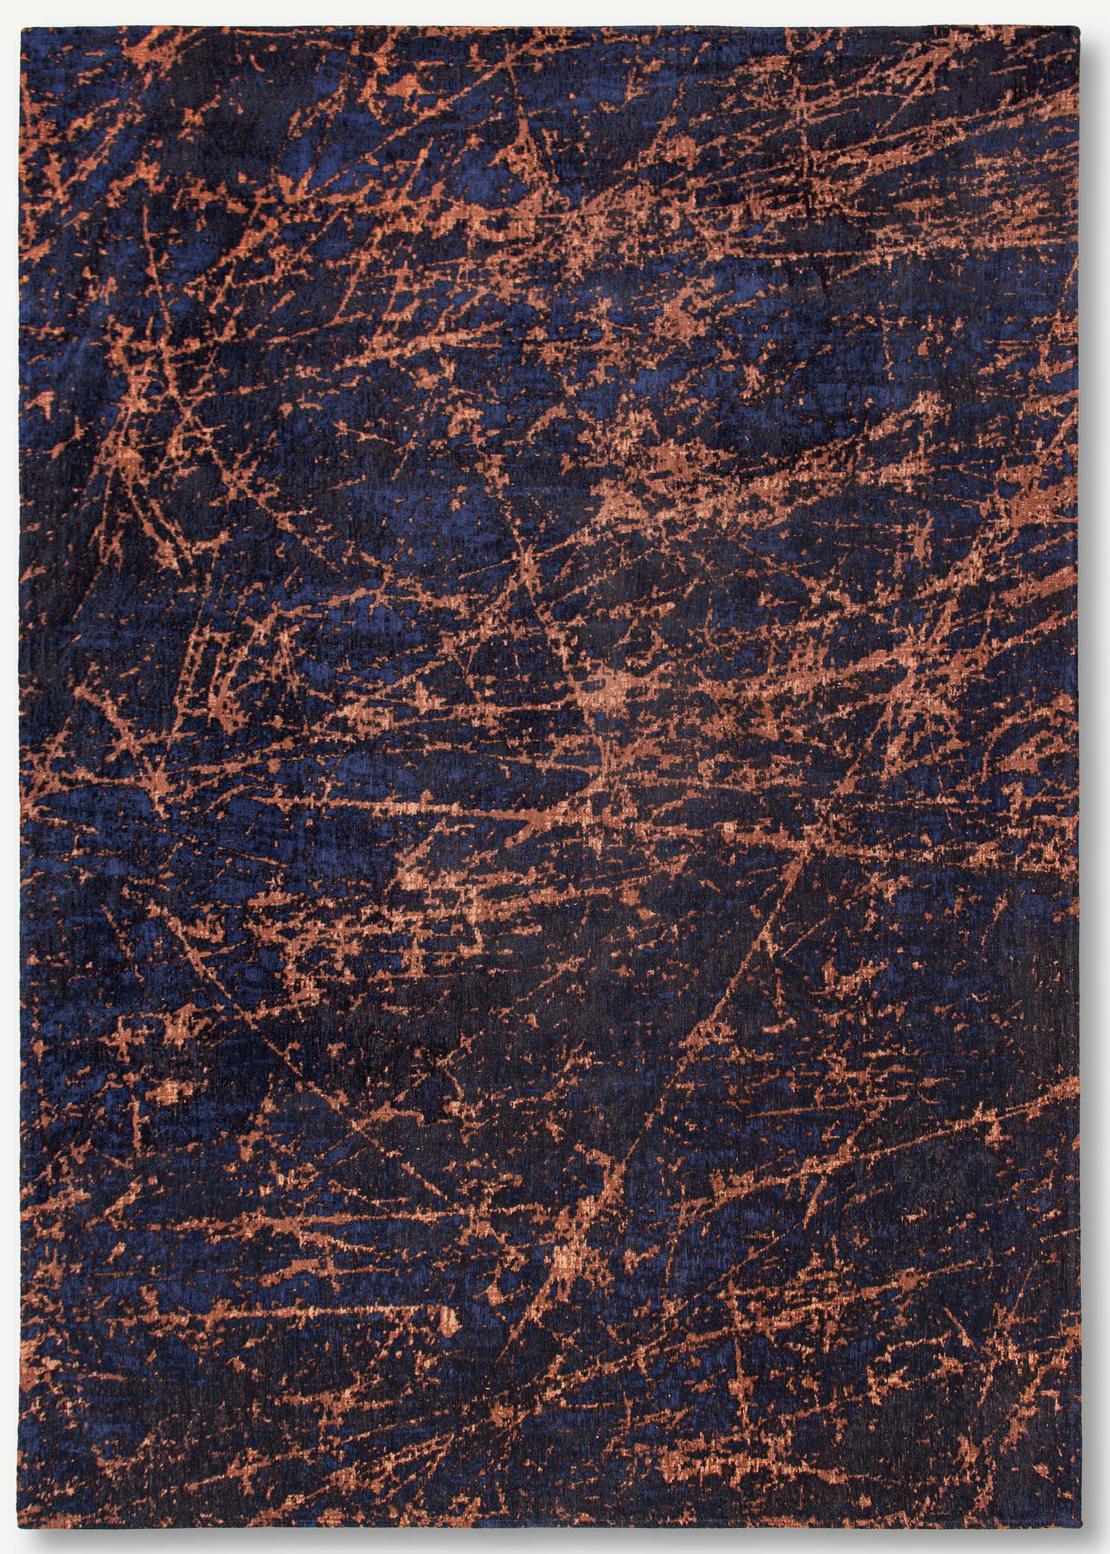 Art Black & Orange Belgian Rug ☞ Size: 6' 7" x 9' 2" (200 x 280 cm)